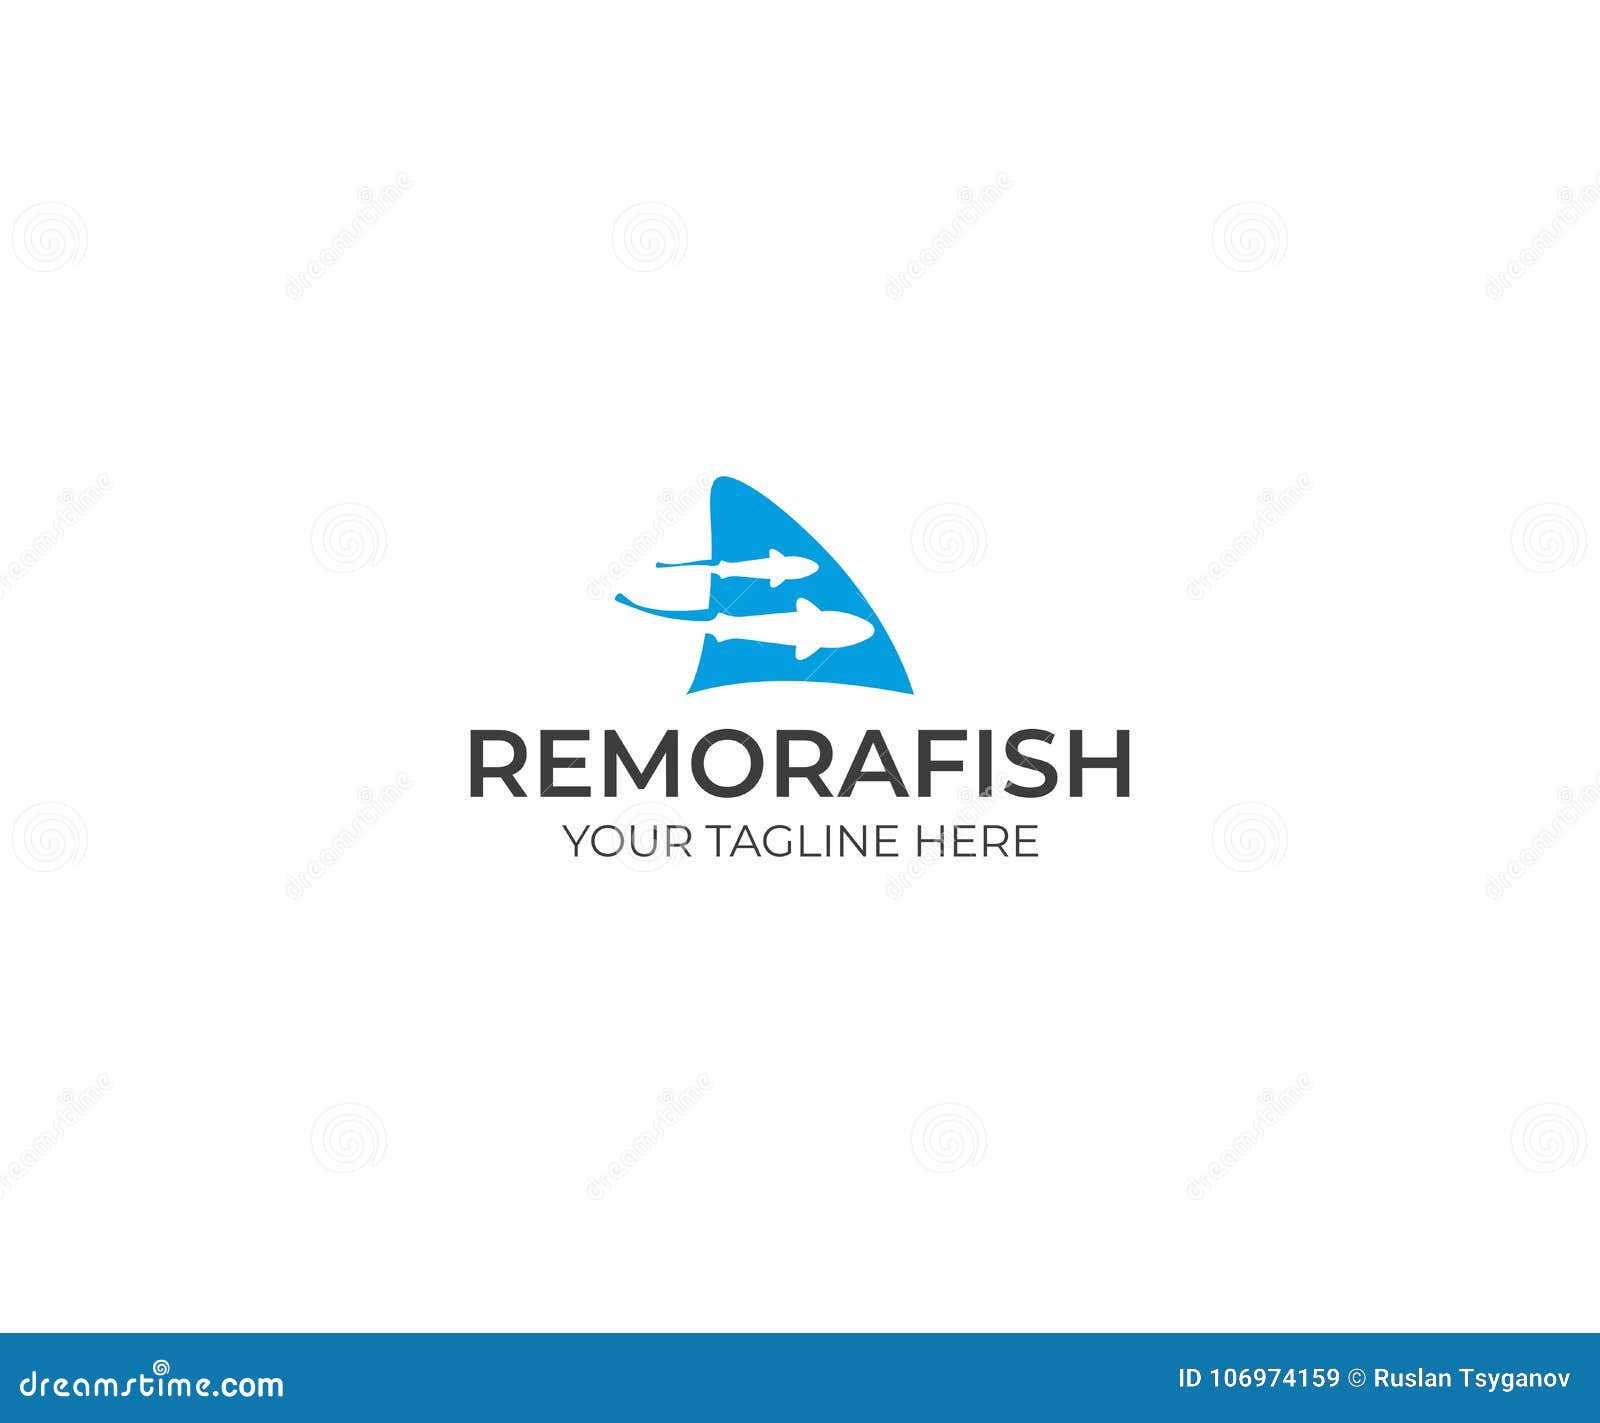 remora fish and shark fin logo template. sharksucker  